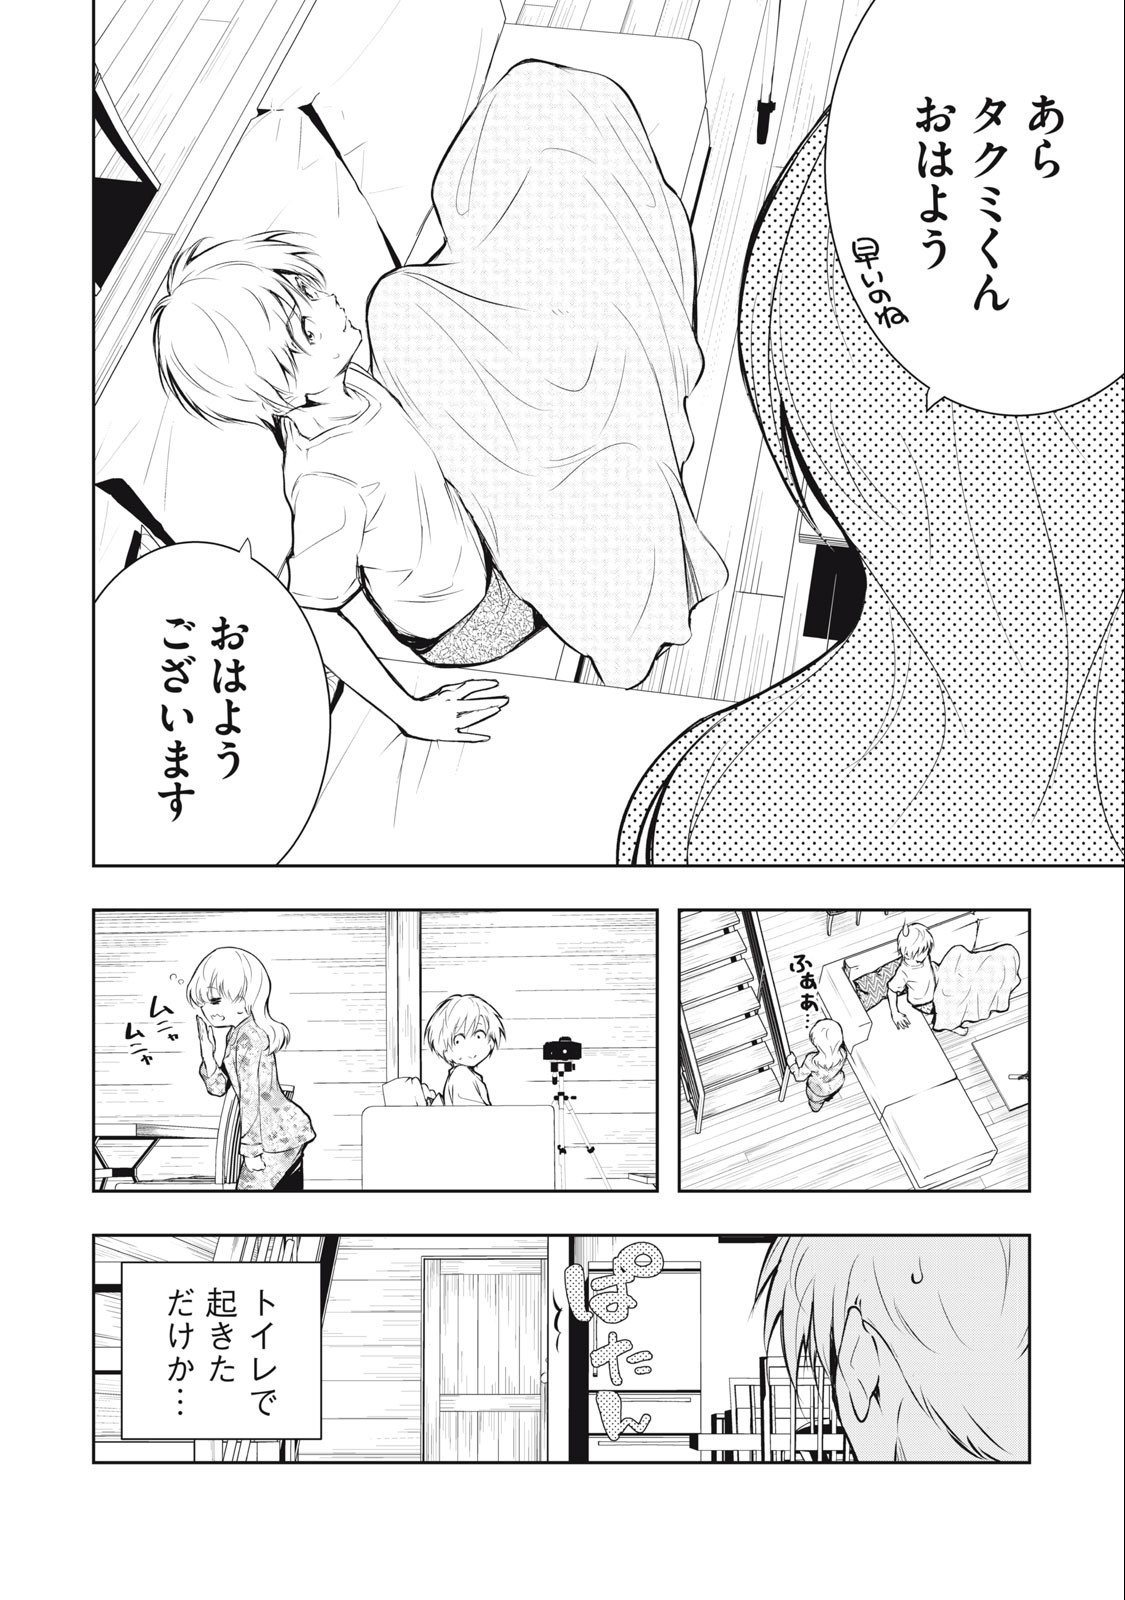 Ore no Joyuu ga Ichiban Midara - Chapter 37 - Page 2